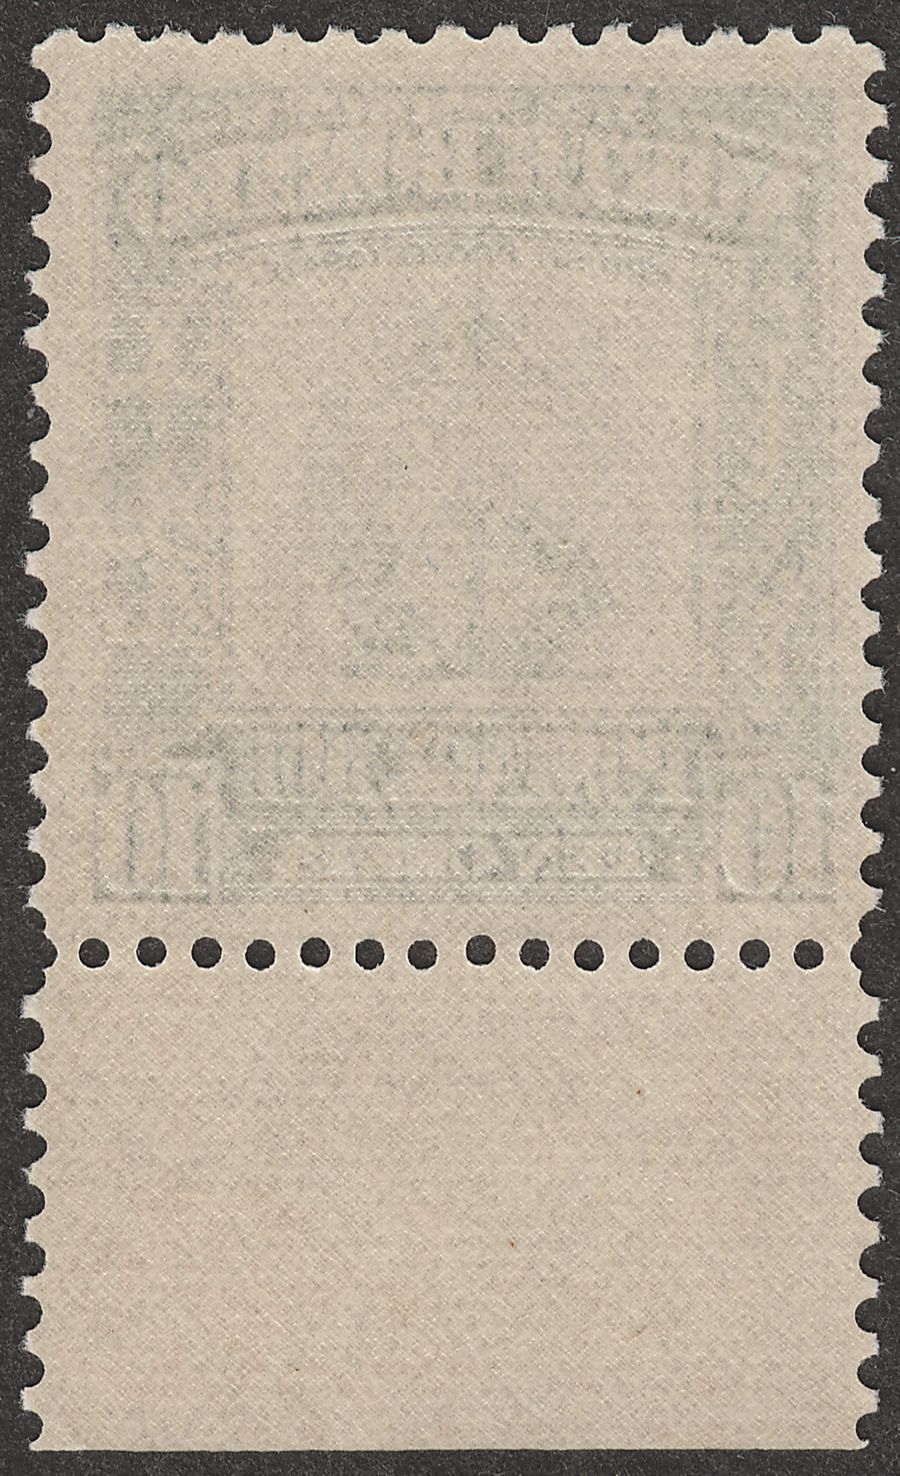 North Borneo 1939 KGVI Postage Due 10c Blue Mint SG D89